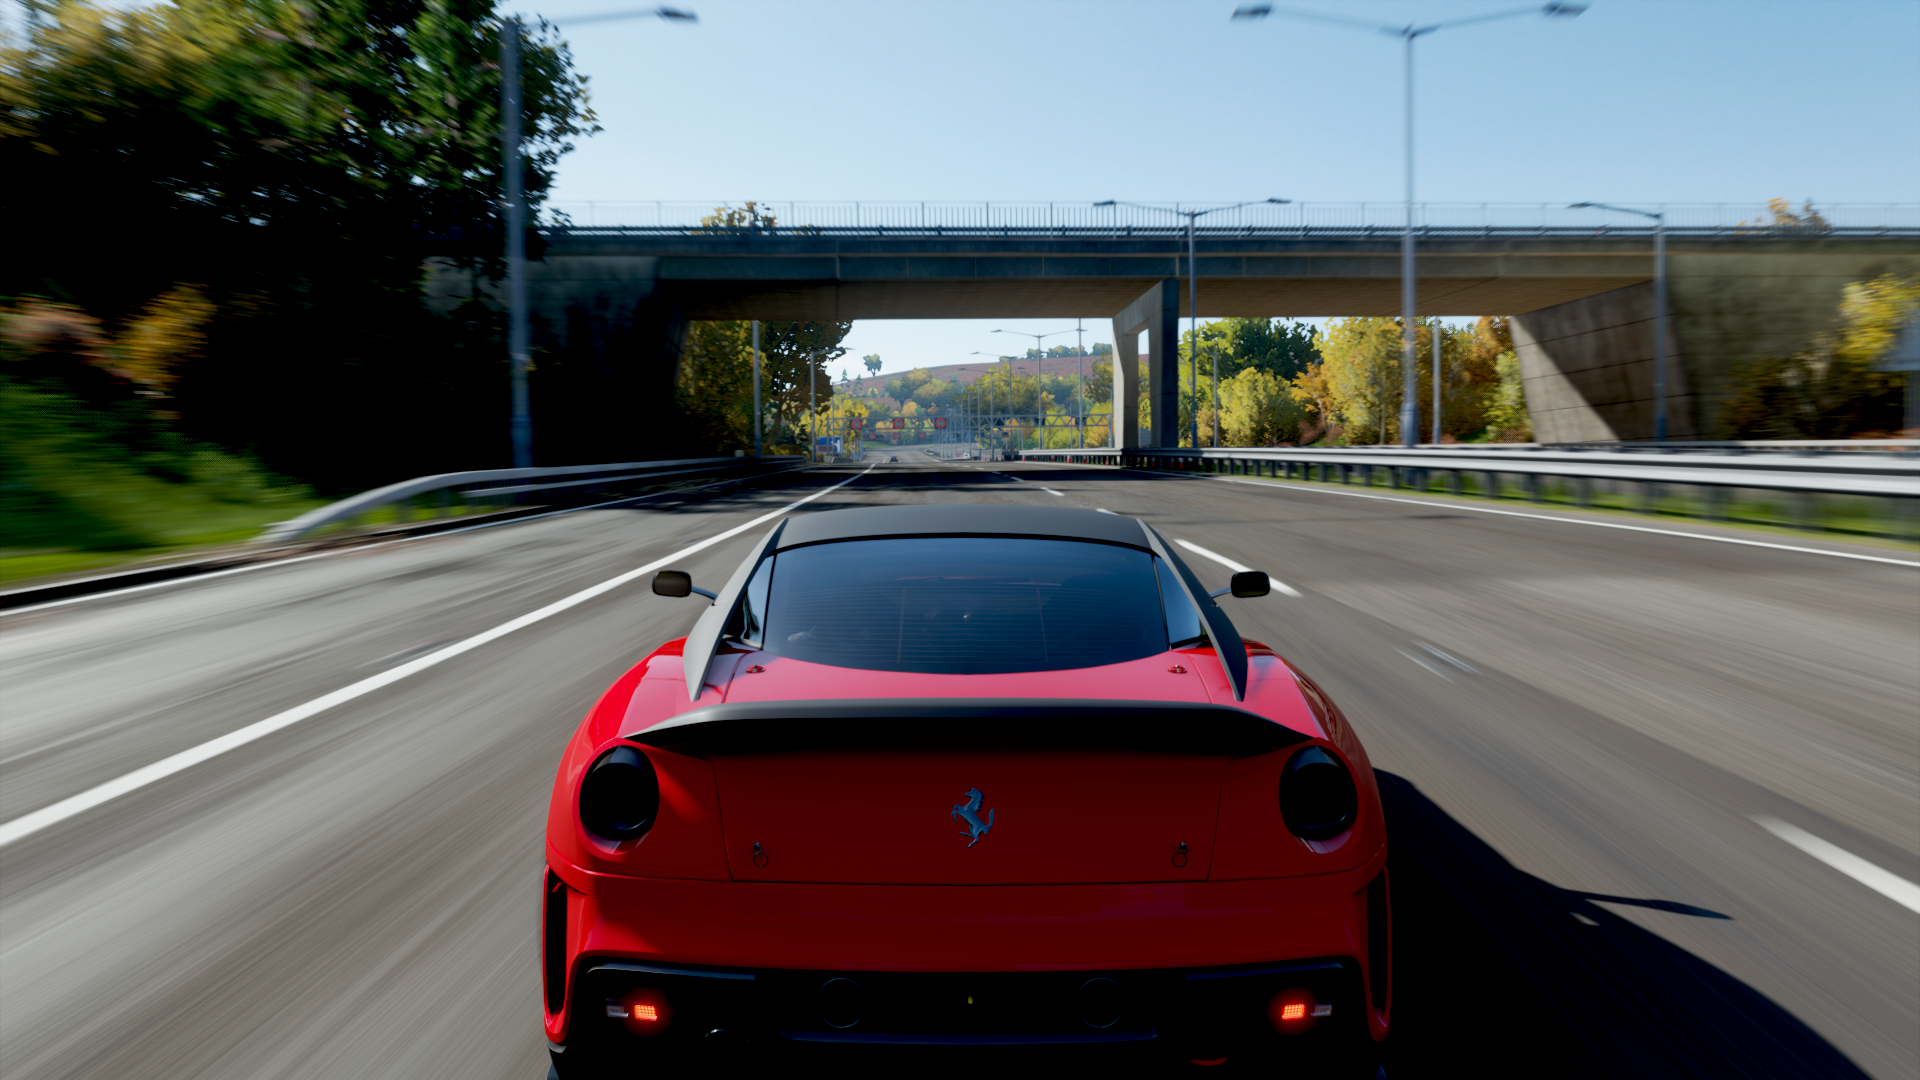 Ferrari forza horizon. Ferrari 599xx Forza Horizon. Forza Horizon 4 Ferrari 599xx. Ferrari 599xx EVO Forza Horizon 4. Форза хорайзен 4 машины.